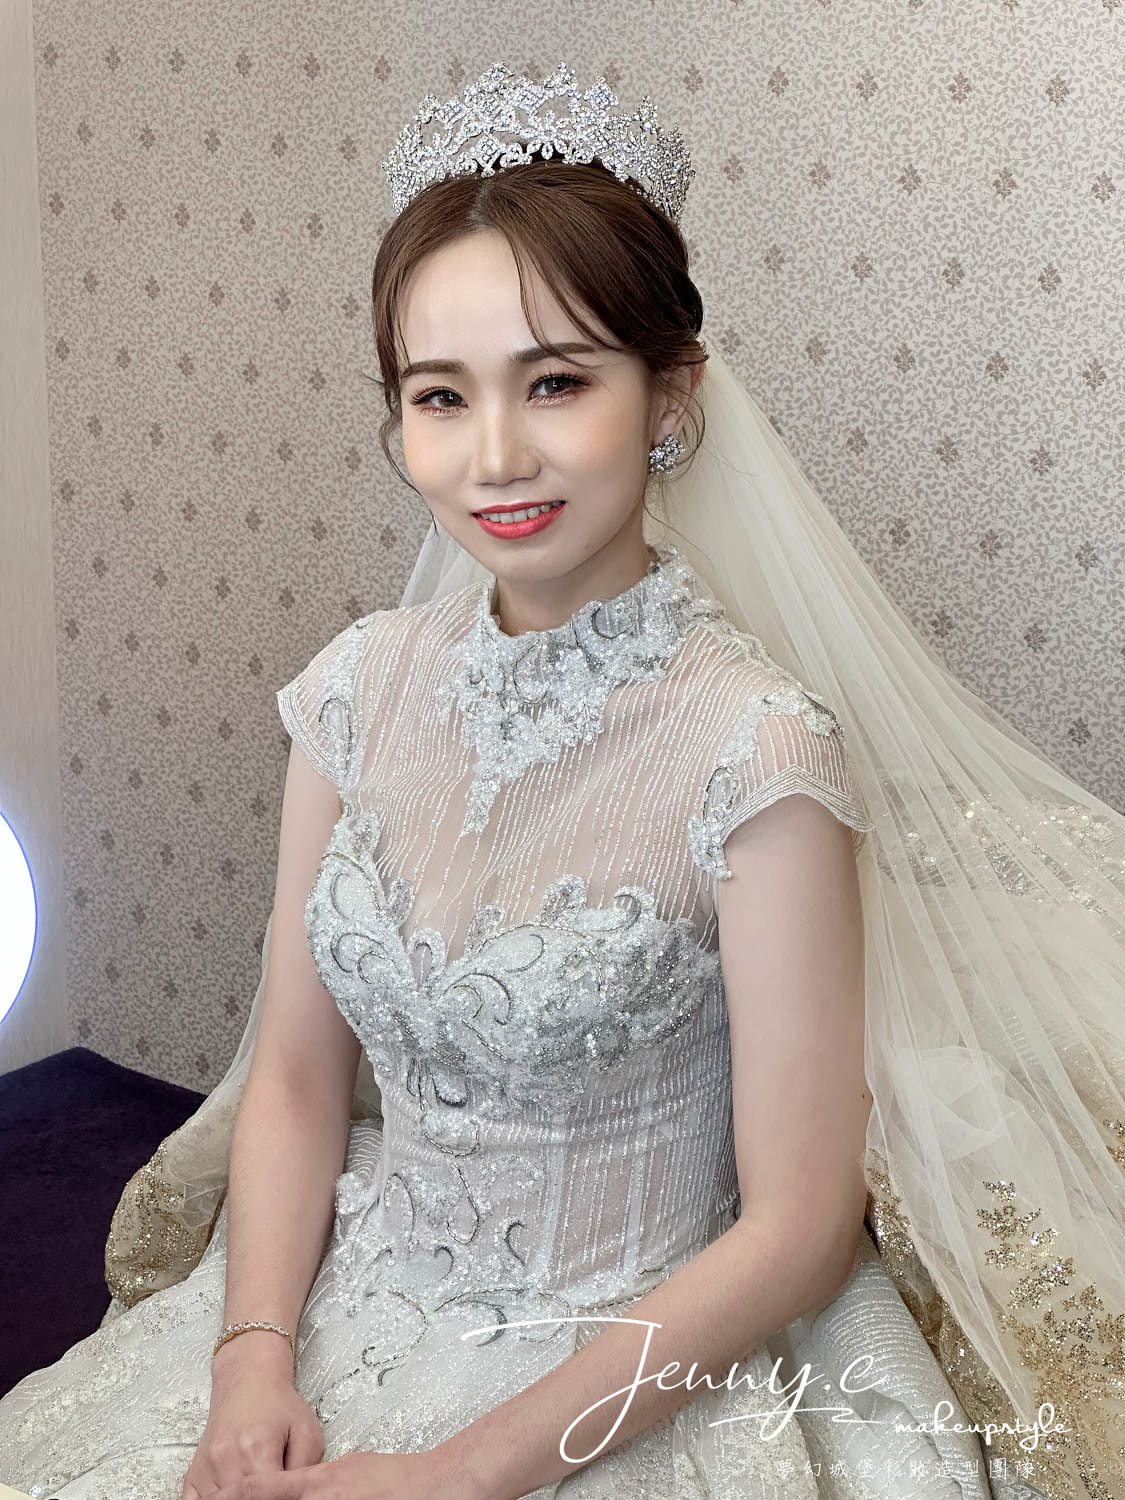 【新秘蓁妮】bride 美伶 結婚造型 / 韓系浪漫